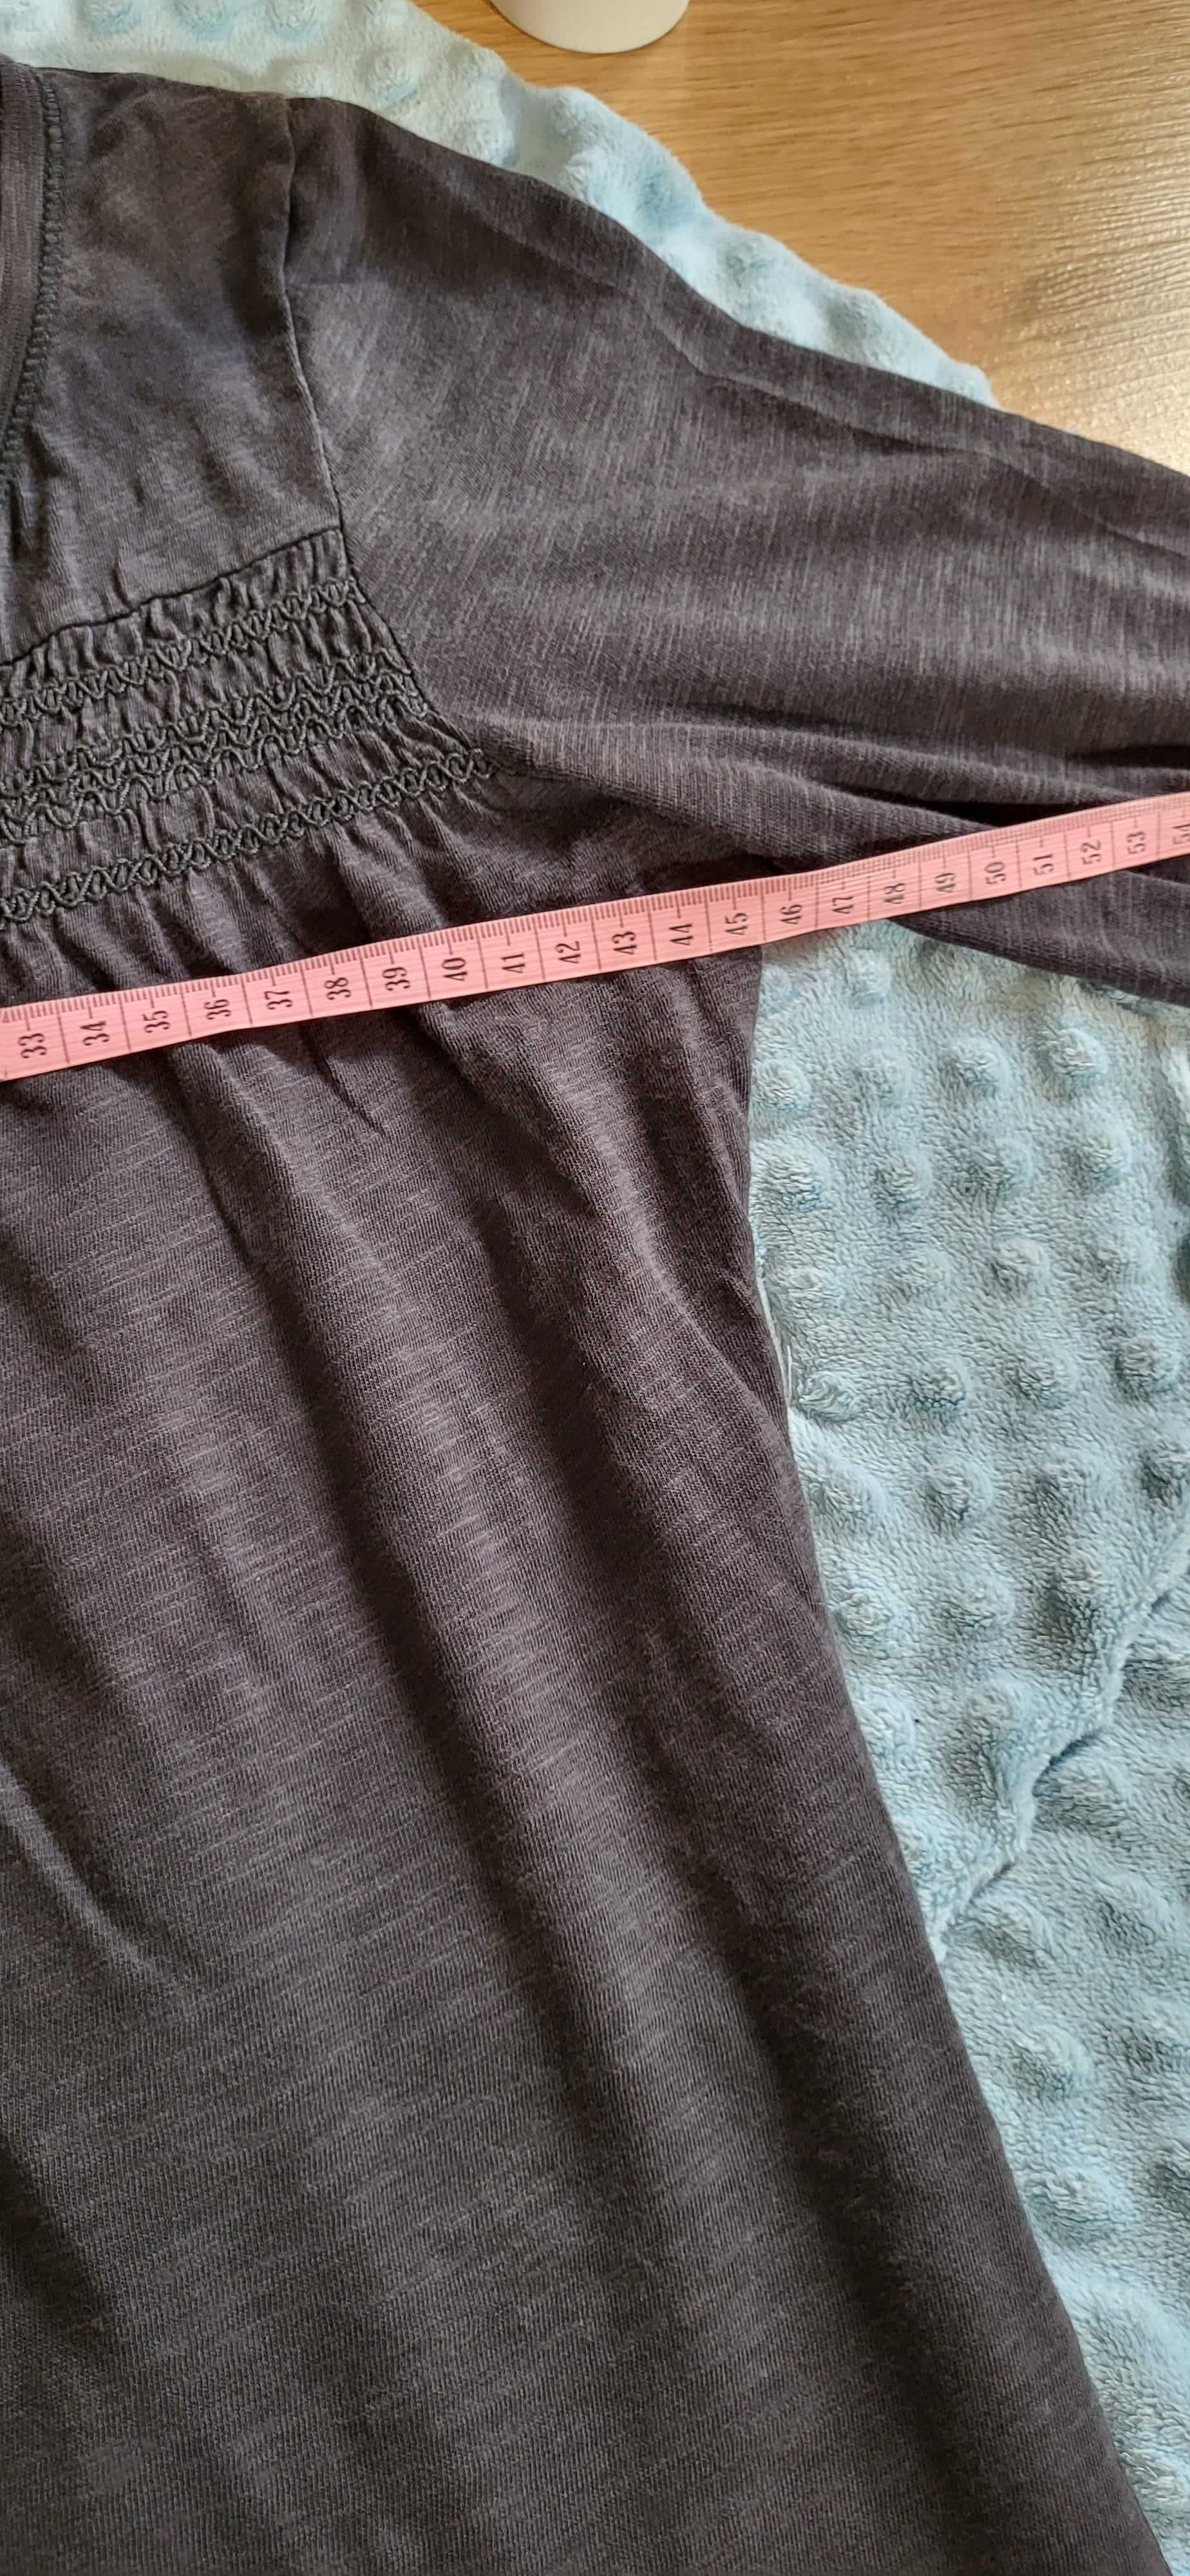 L.O.G.G. by H&M Ciemnoszara melanżowa tunika z rękawem 3/4 rozmiar S.